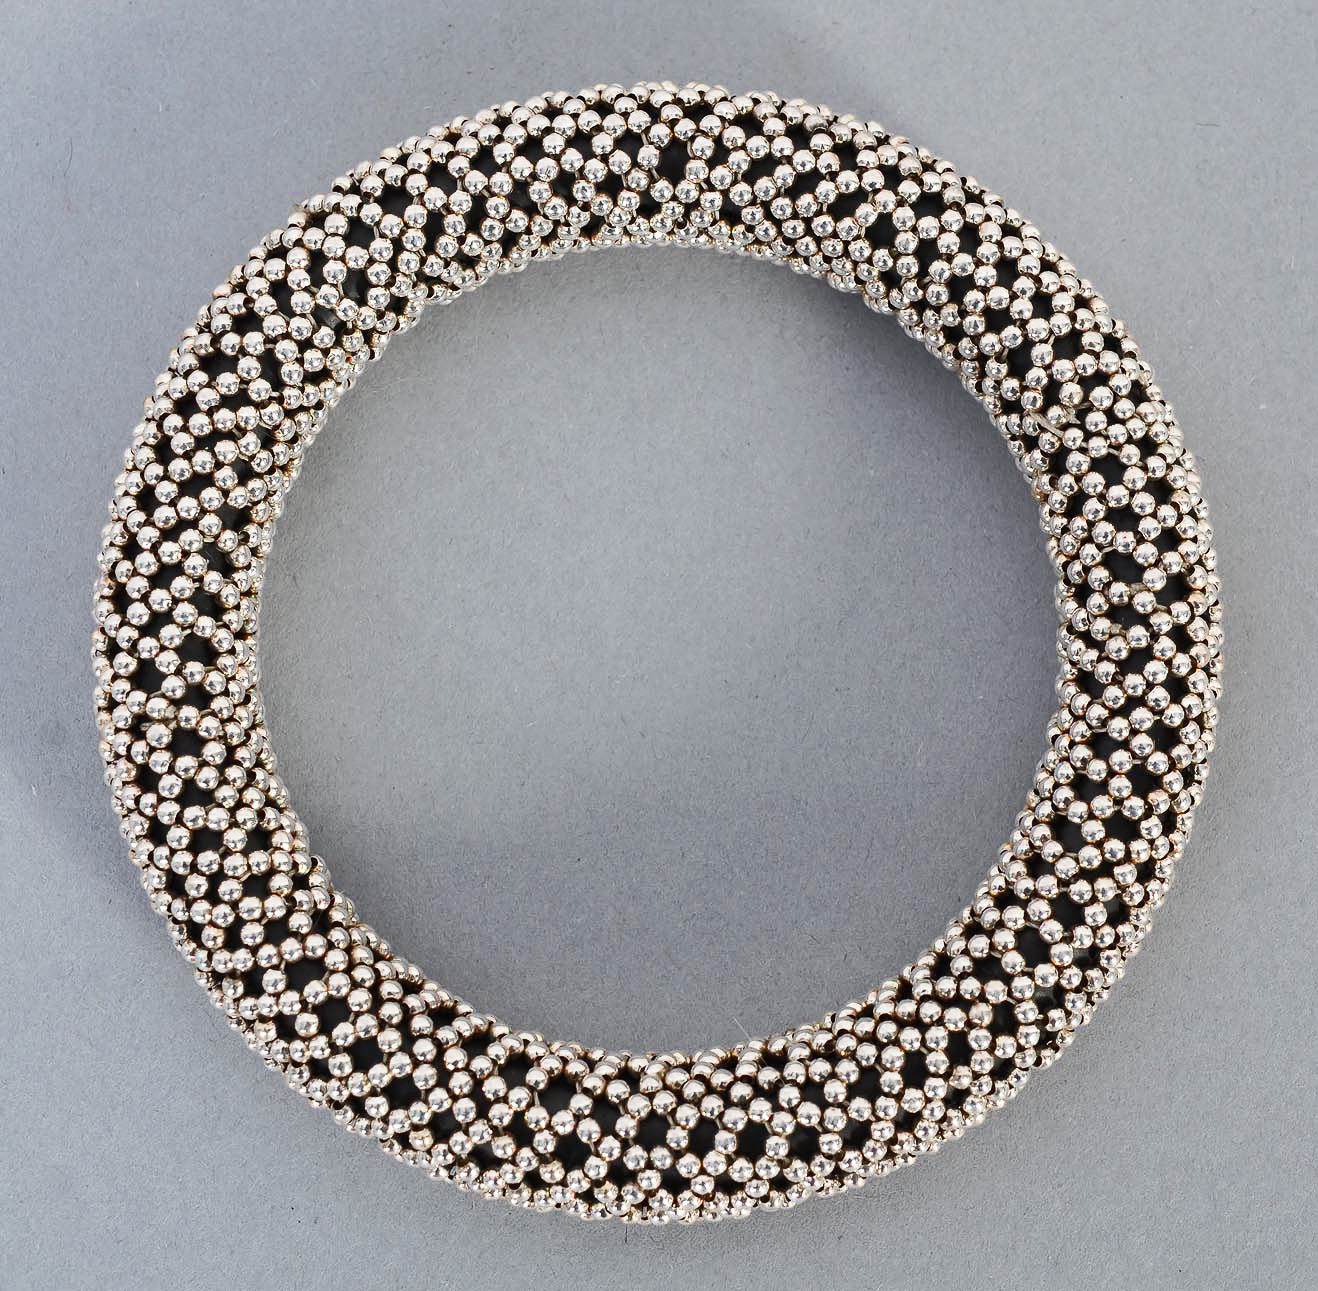 tane-silver-dots-bangle-bracelet-1429548-flat-Edit